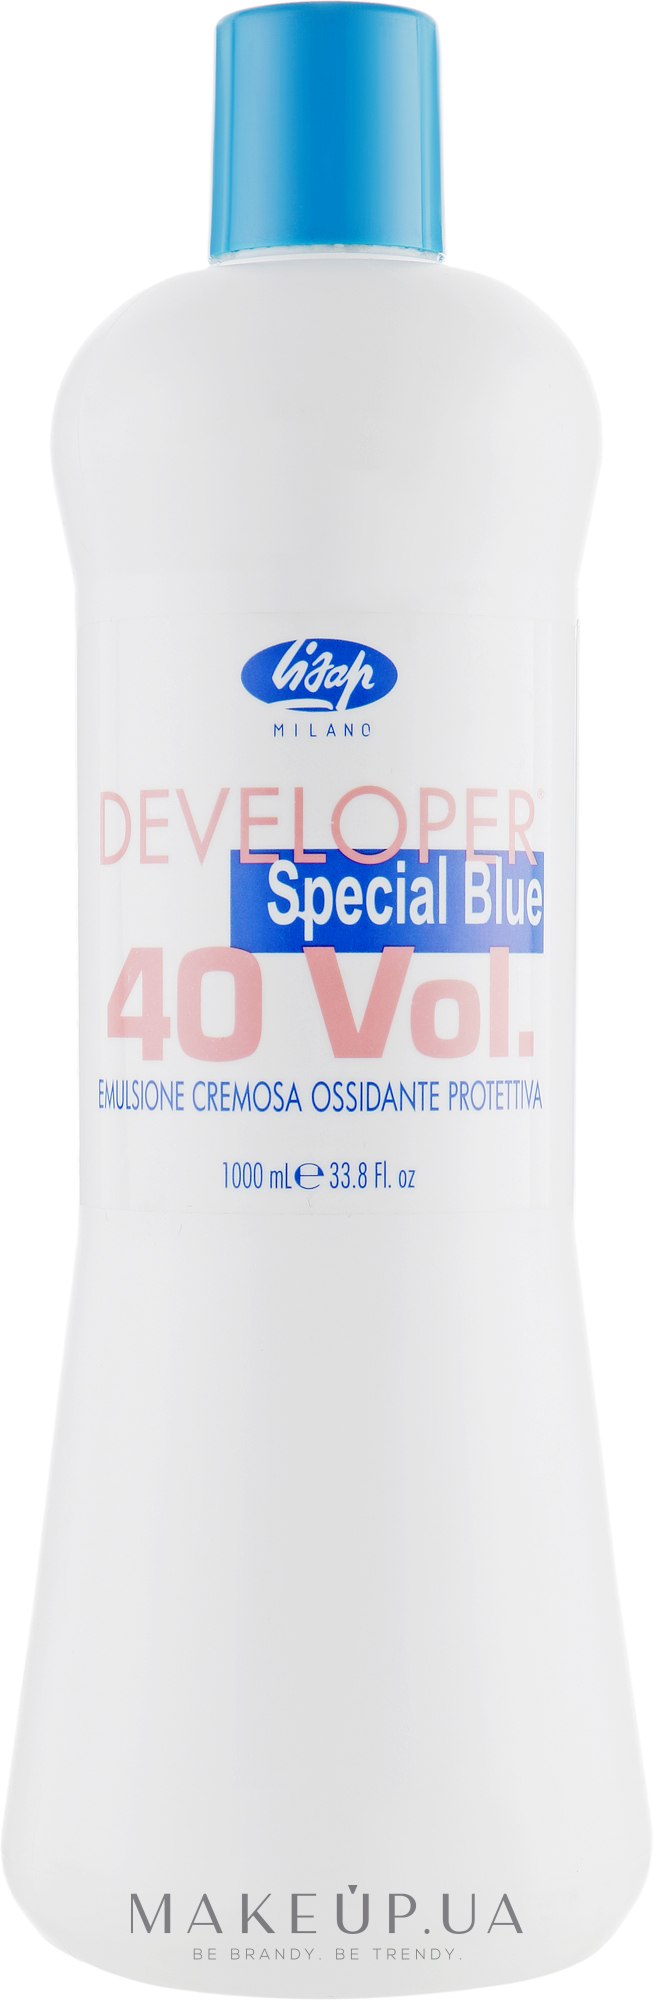 Окислитель 12% - Lisap Developer Special Blue 40 vol. — фото 1000ml